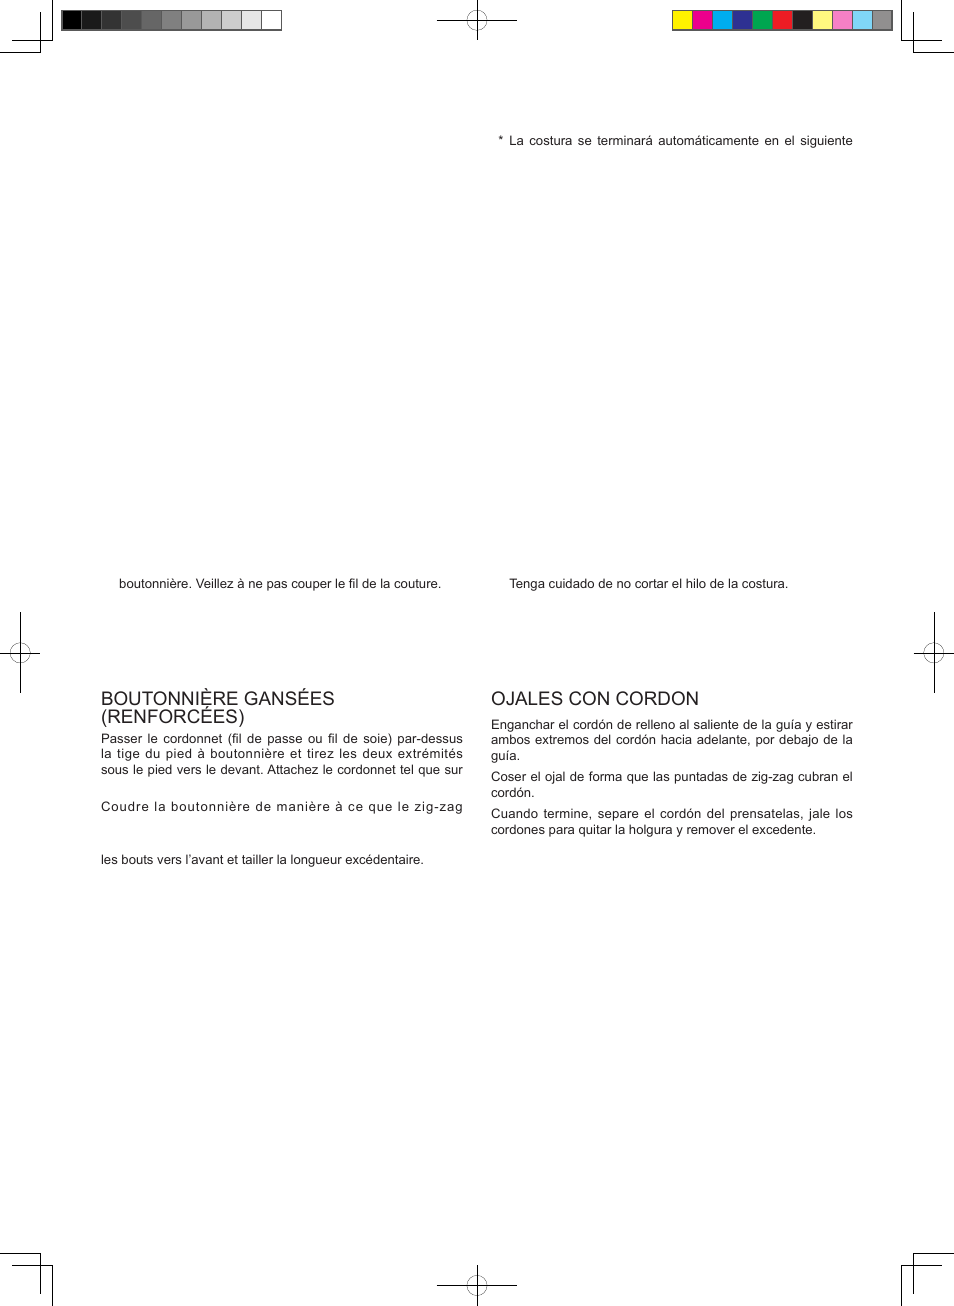 Boutonnière gansées (renforcées), Ojales con cordon | SINGER 8768 HERITAGE User Manual | Page 51 / 60